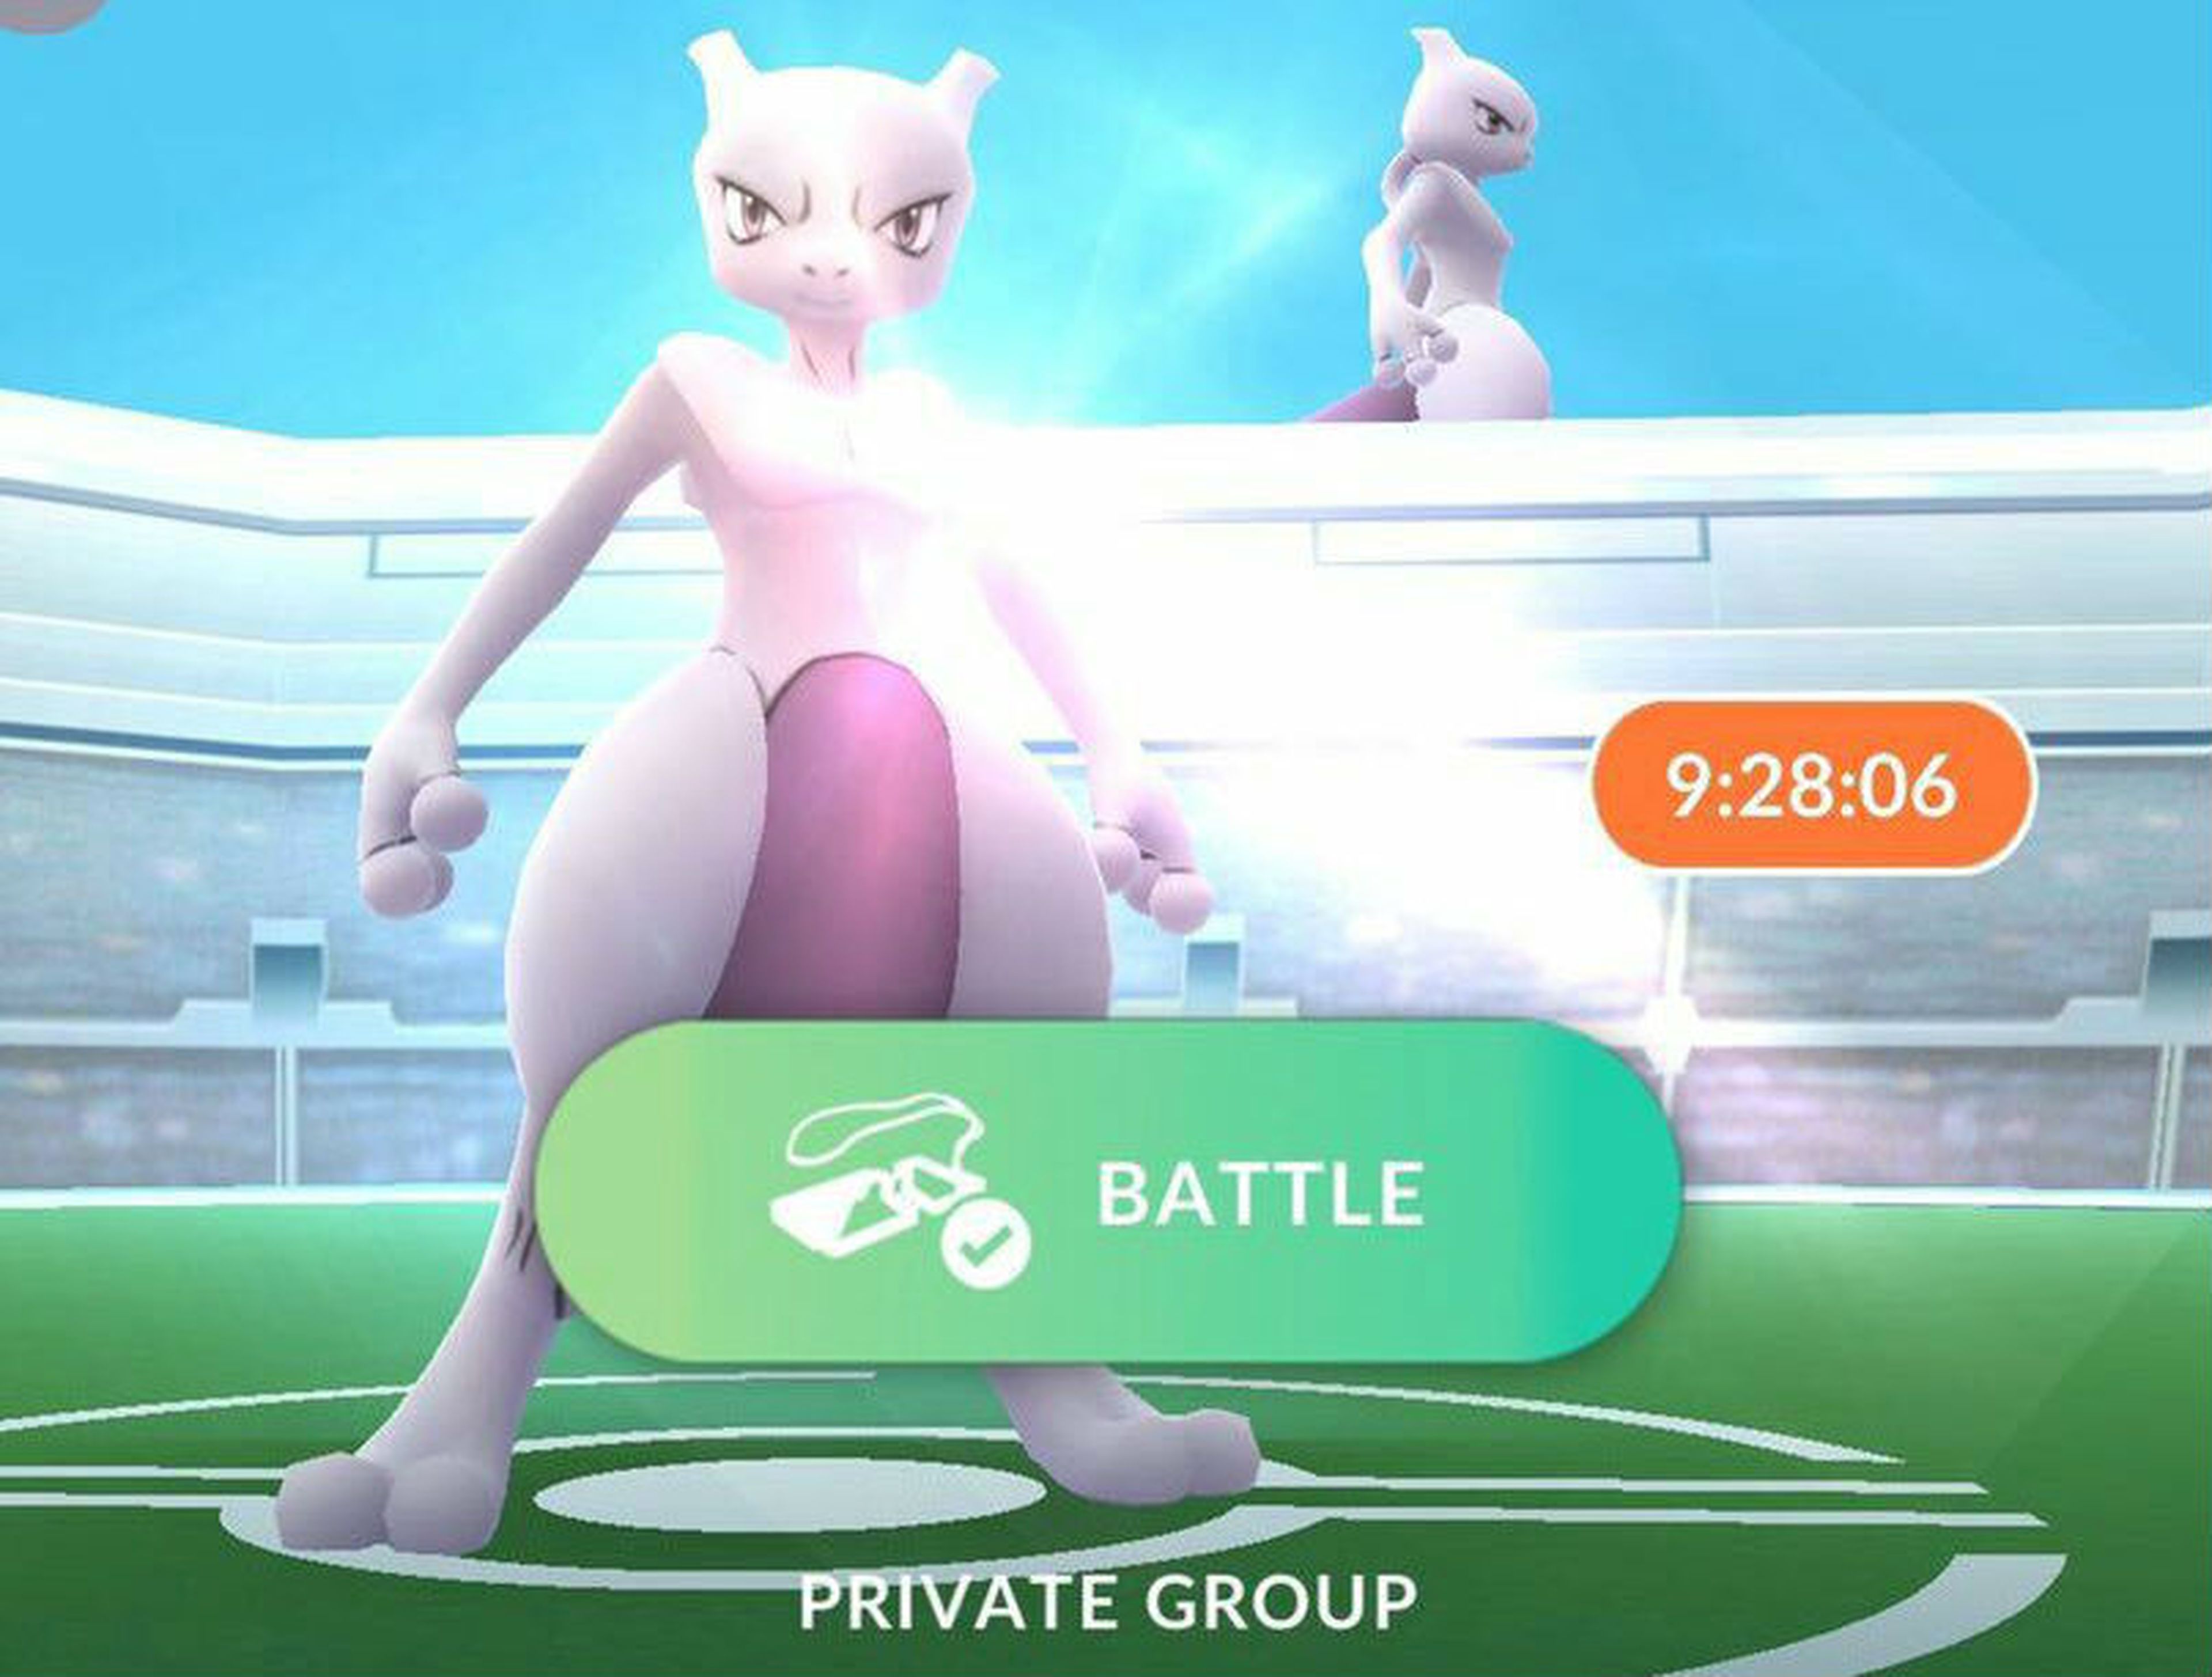 Cómo capturar a Mew y Mewtwo en Pokémon Go: Todos los métodos y fechas